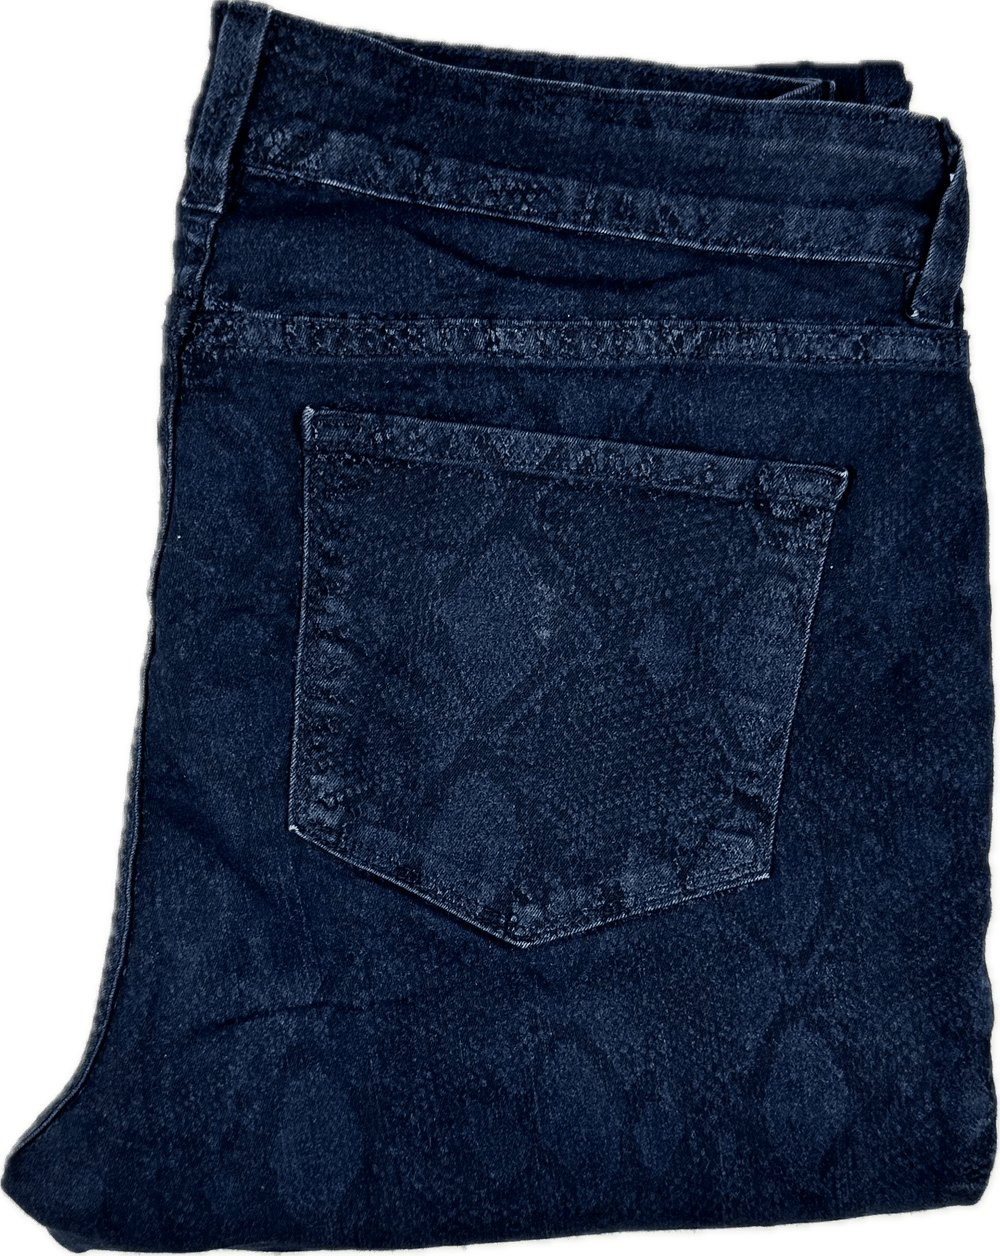 NYDJ Snakeskin Printed Skinny Jeans -Size 12US or 16AU - Jean Pool